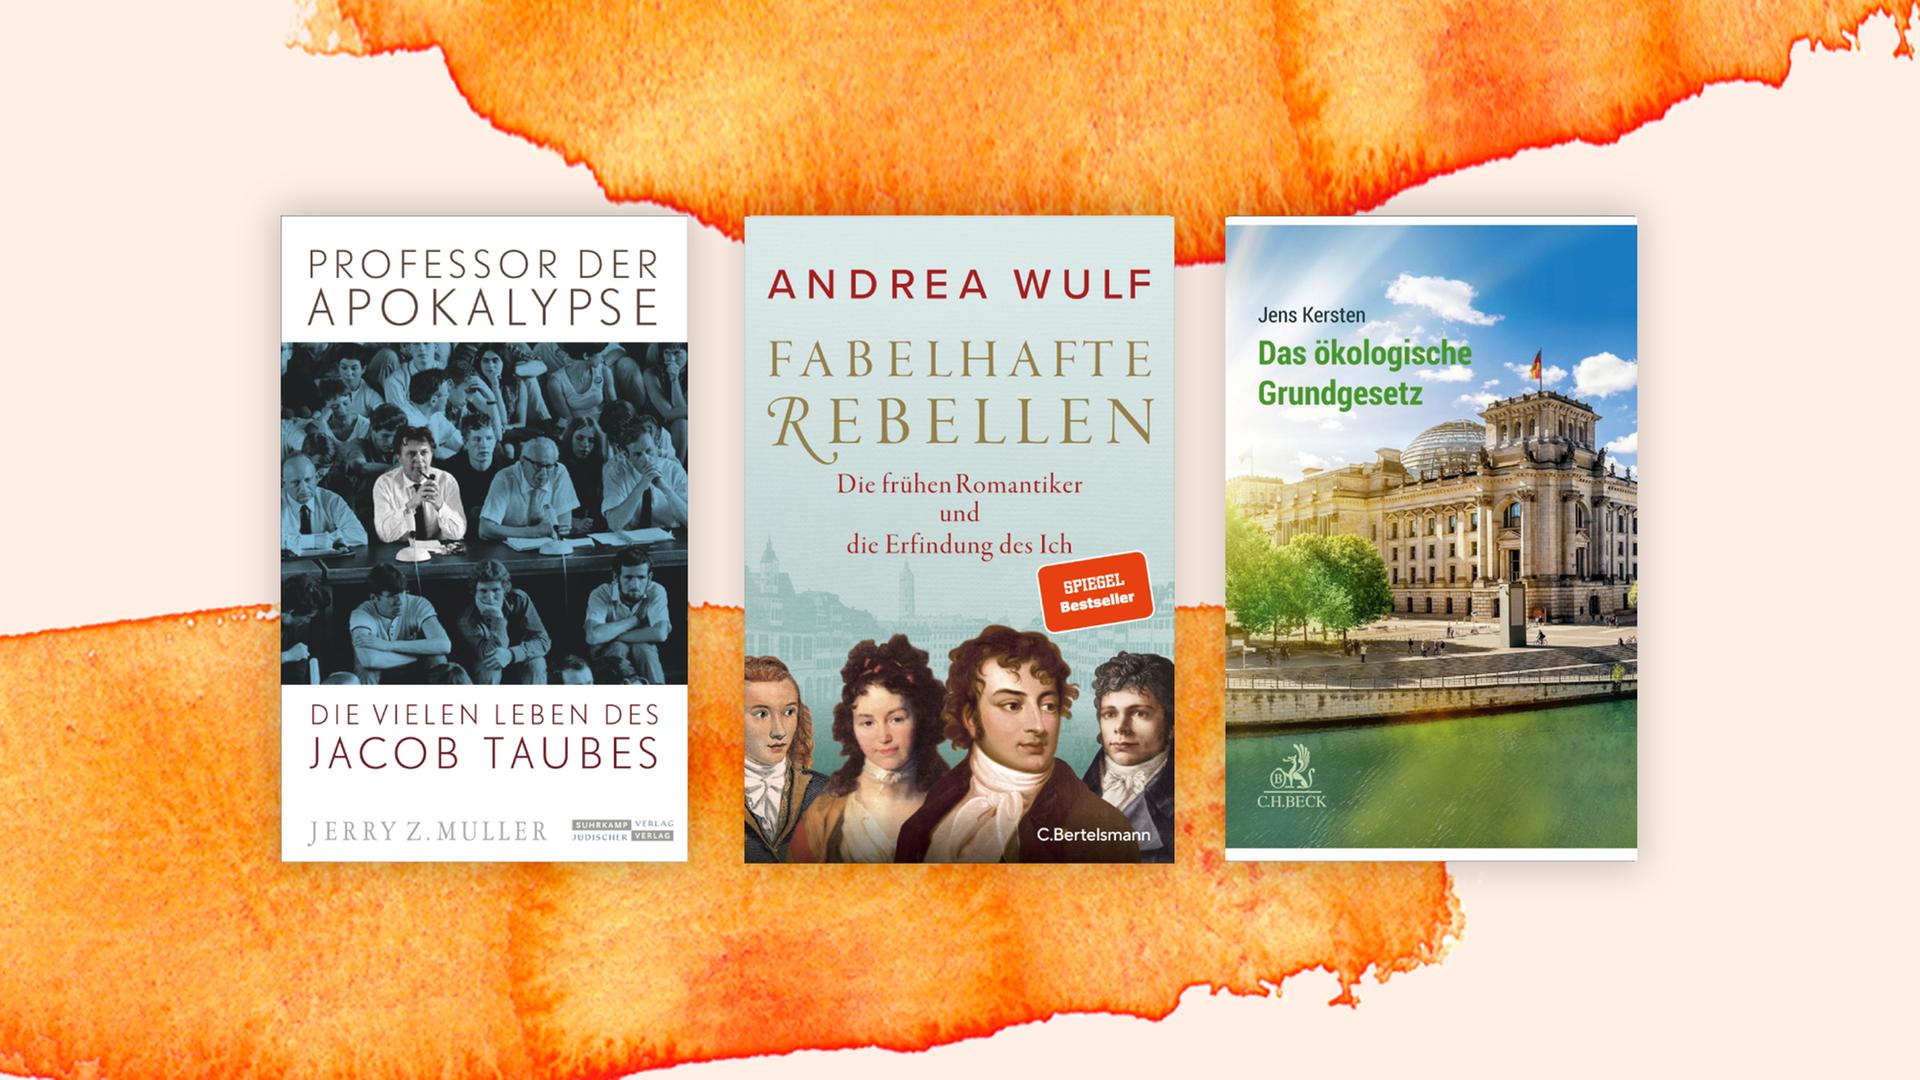 Collage mit den Covern der drei Bestplatzierten: "Professor der Apokalypse", "Fabelhafte Rebellen" und "Das ökologische Grundgesetz".